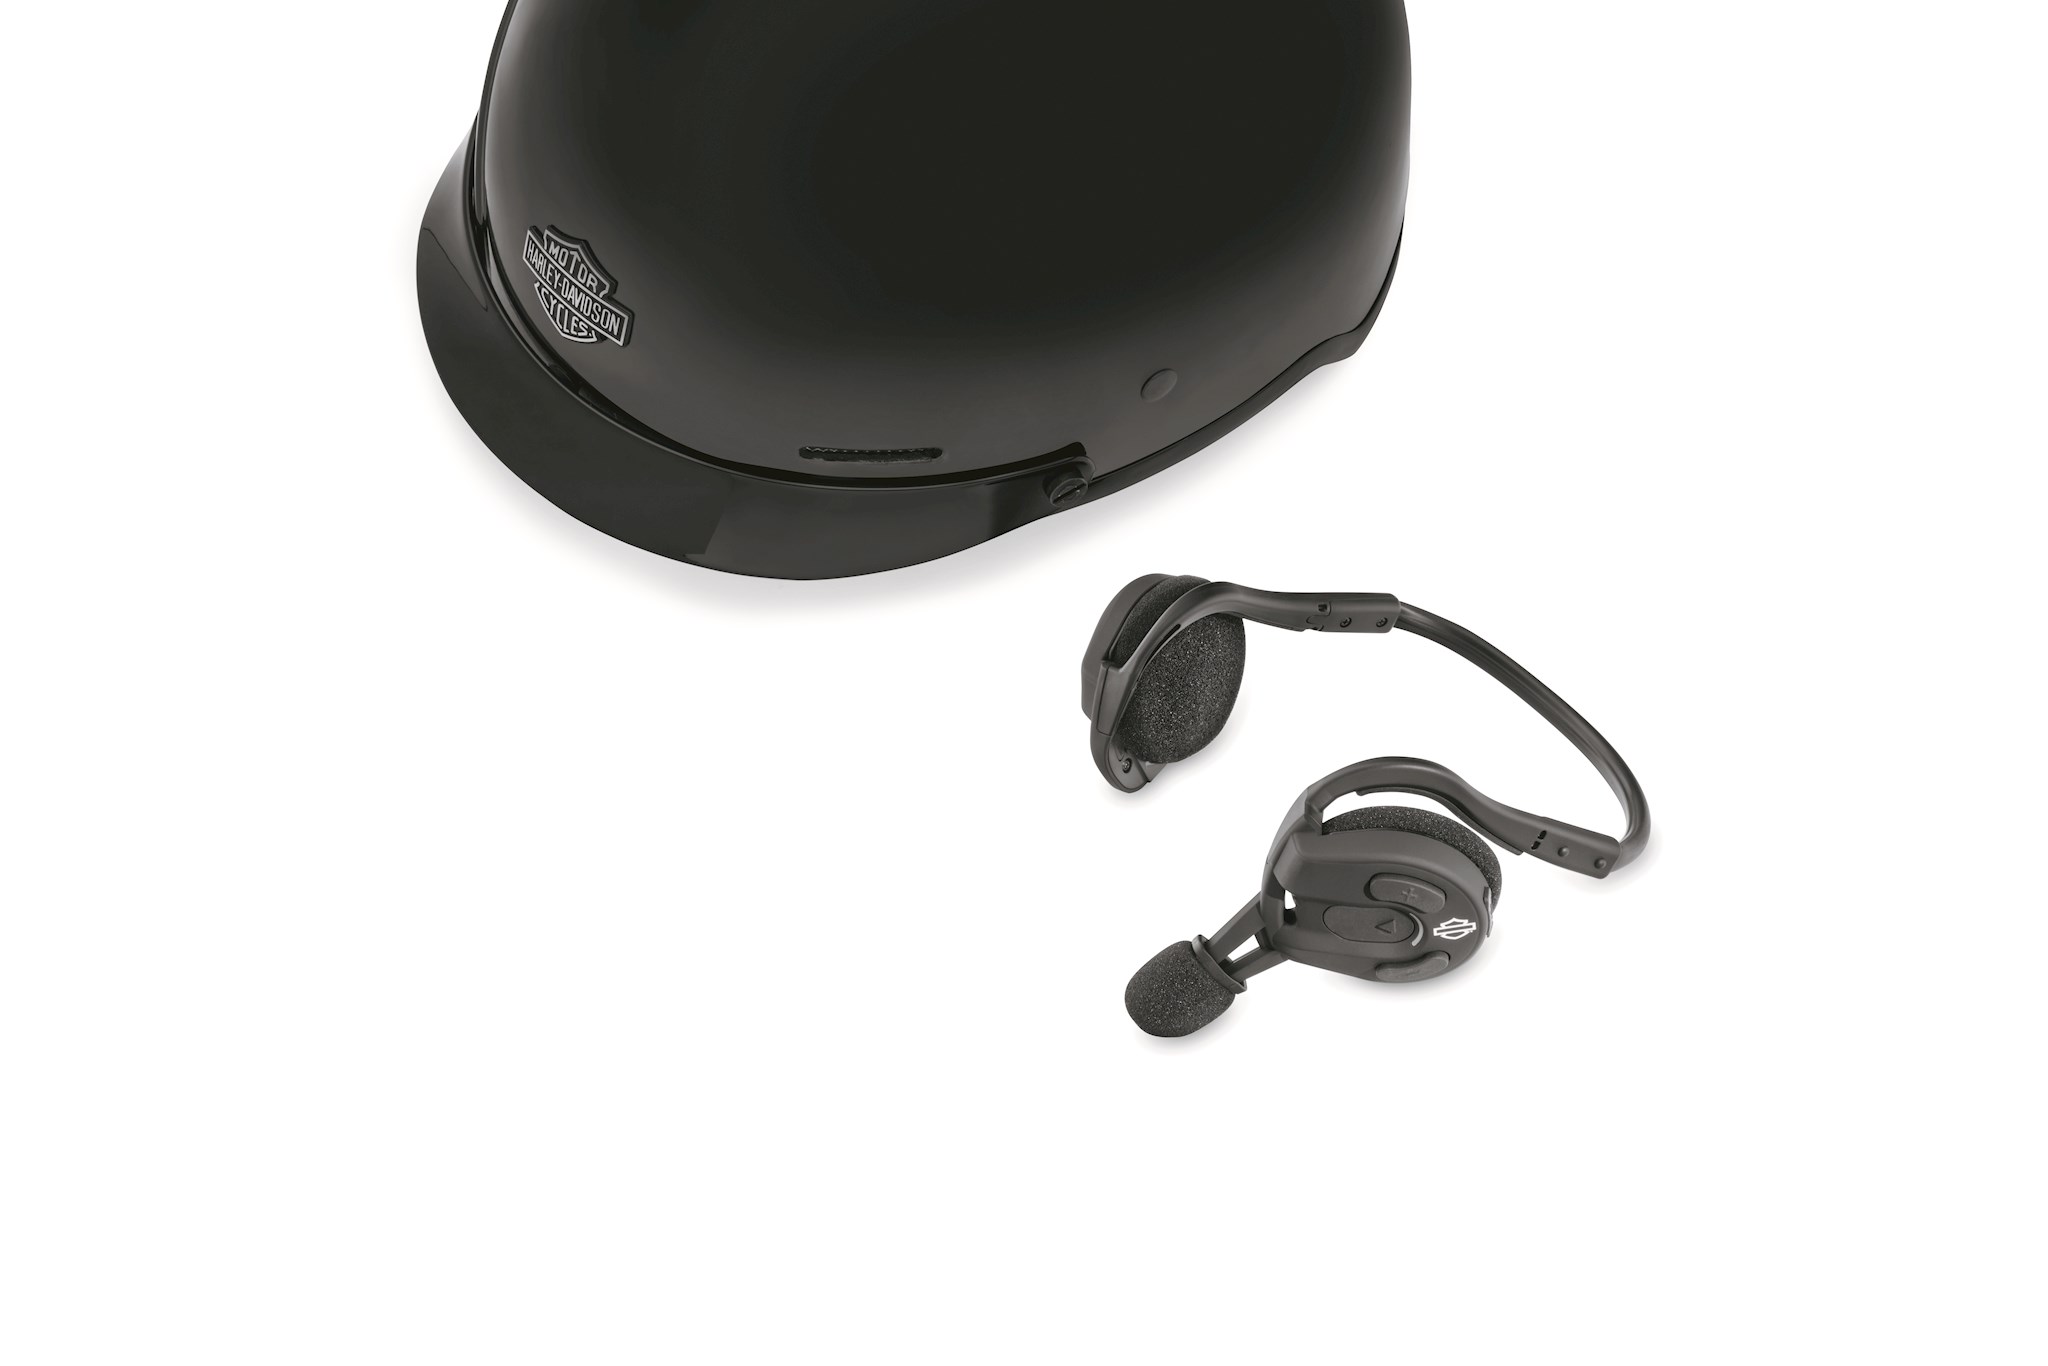 ハーレーダビッドソン Harley Davidson ハーフヘルメット用 ヘッドセット Boom! Audio Expand 2.0  Bluetooth Half Helmet Headset 最善